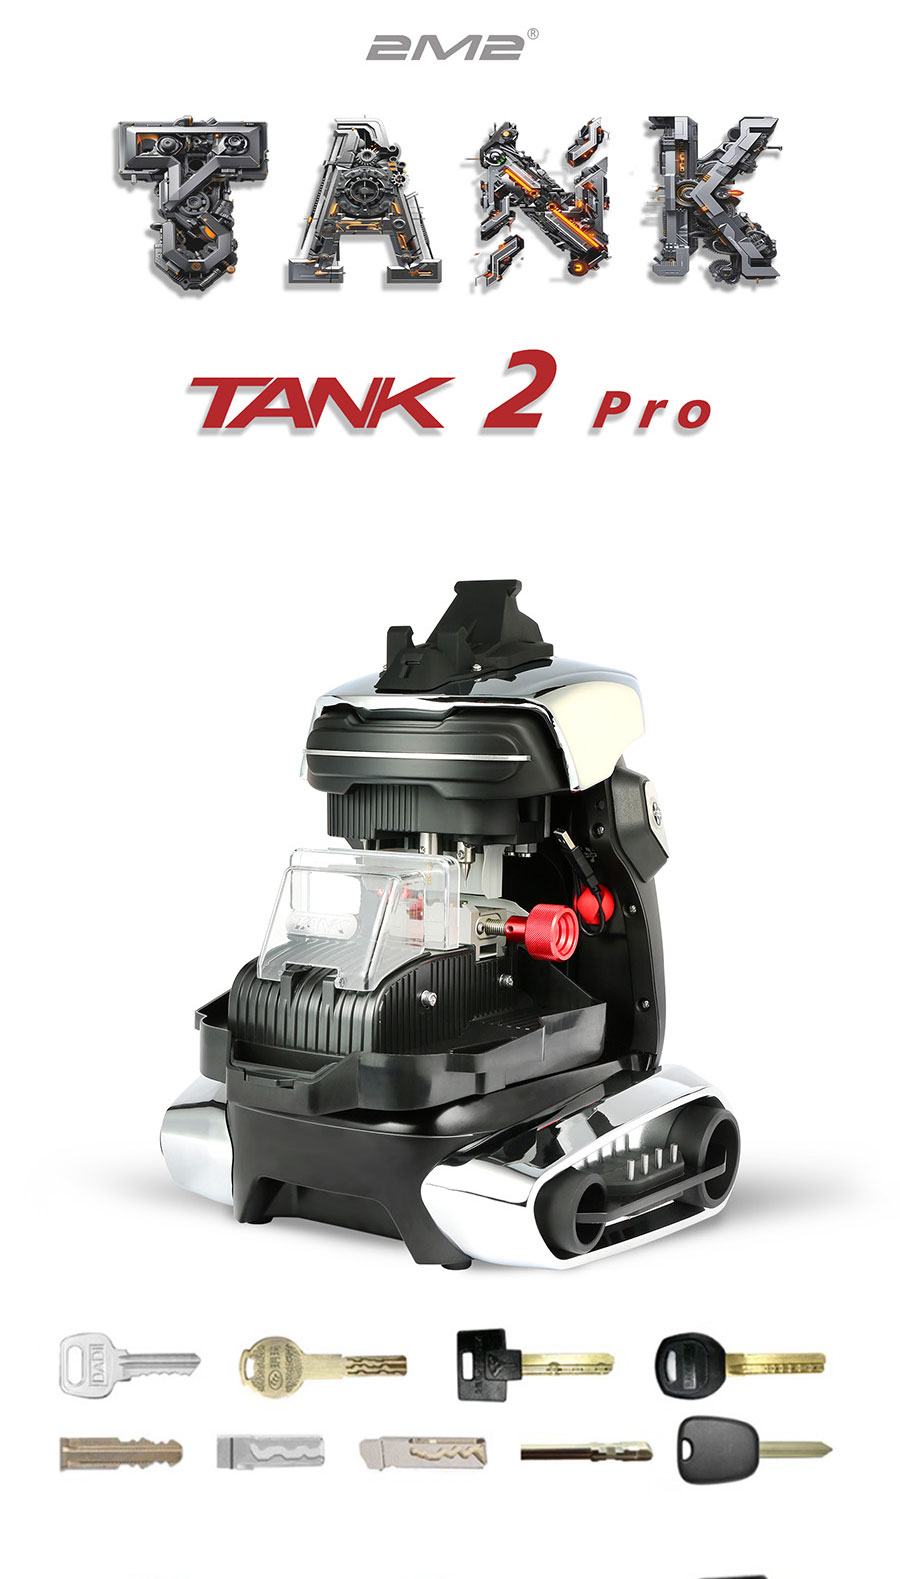 2m2-tank-2-pro-cnc-key-cutting-machine-4